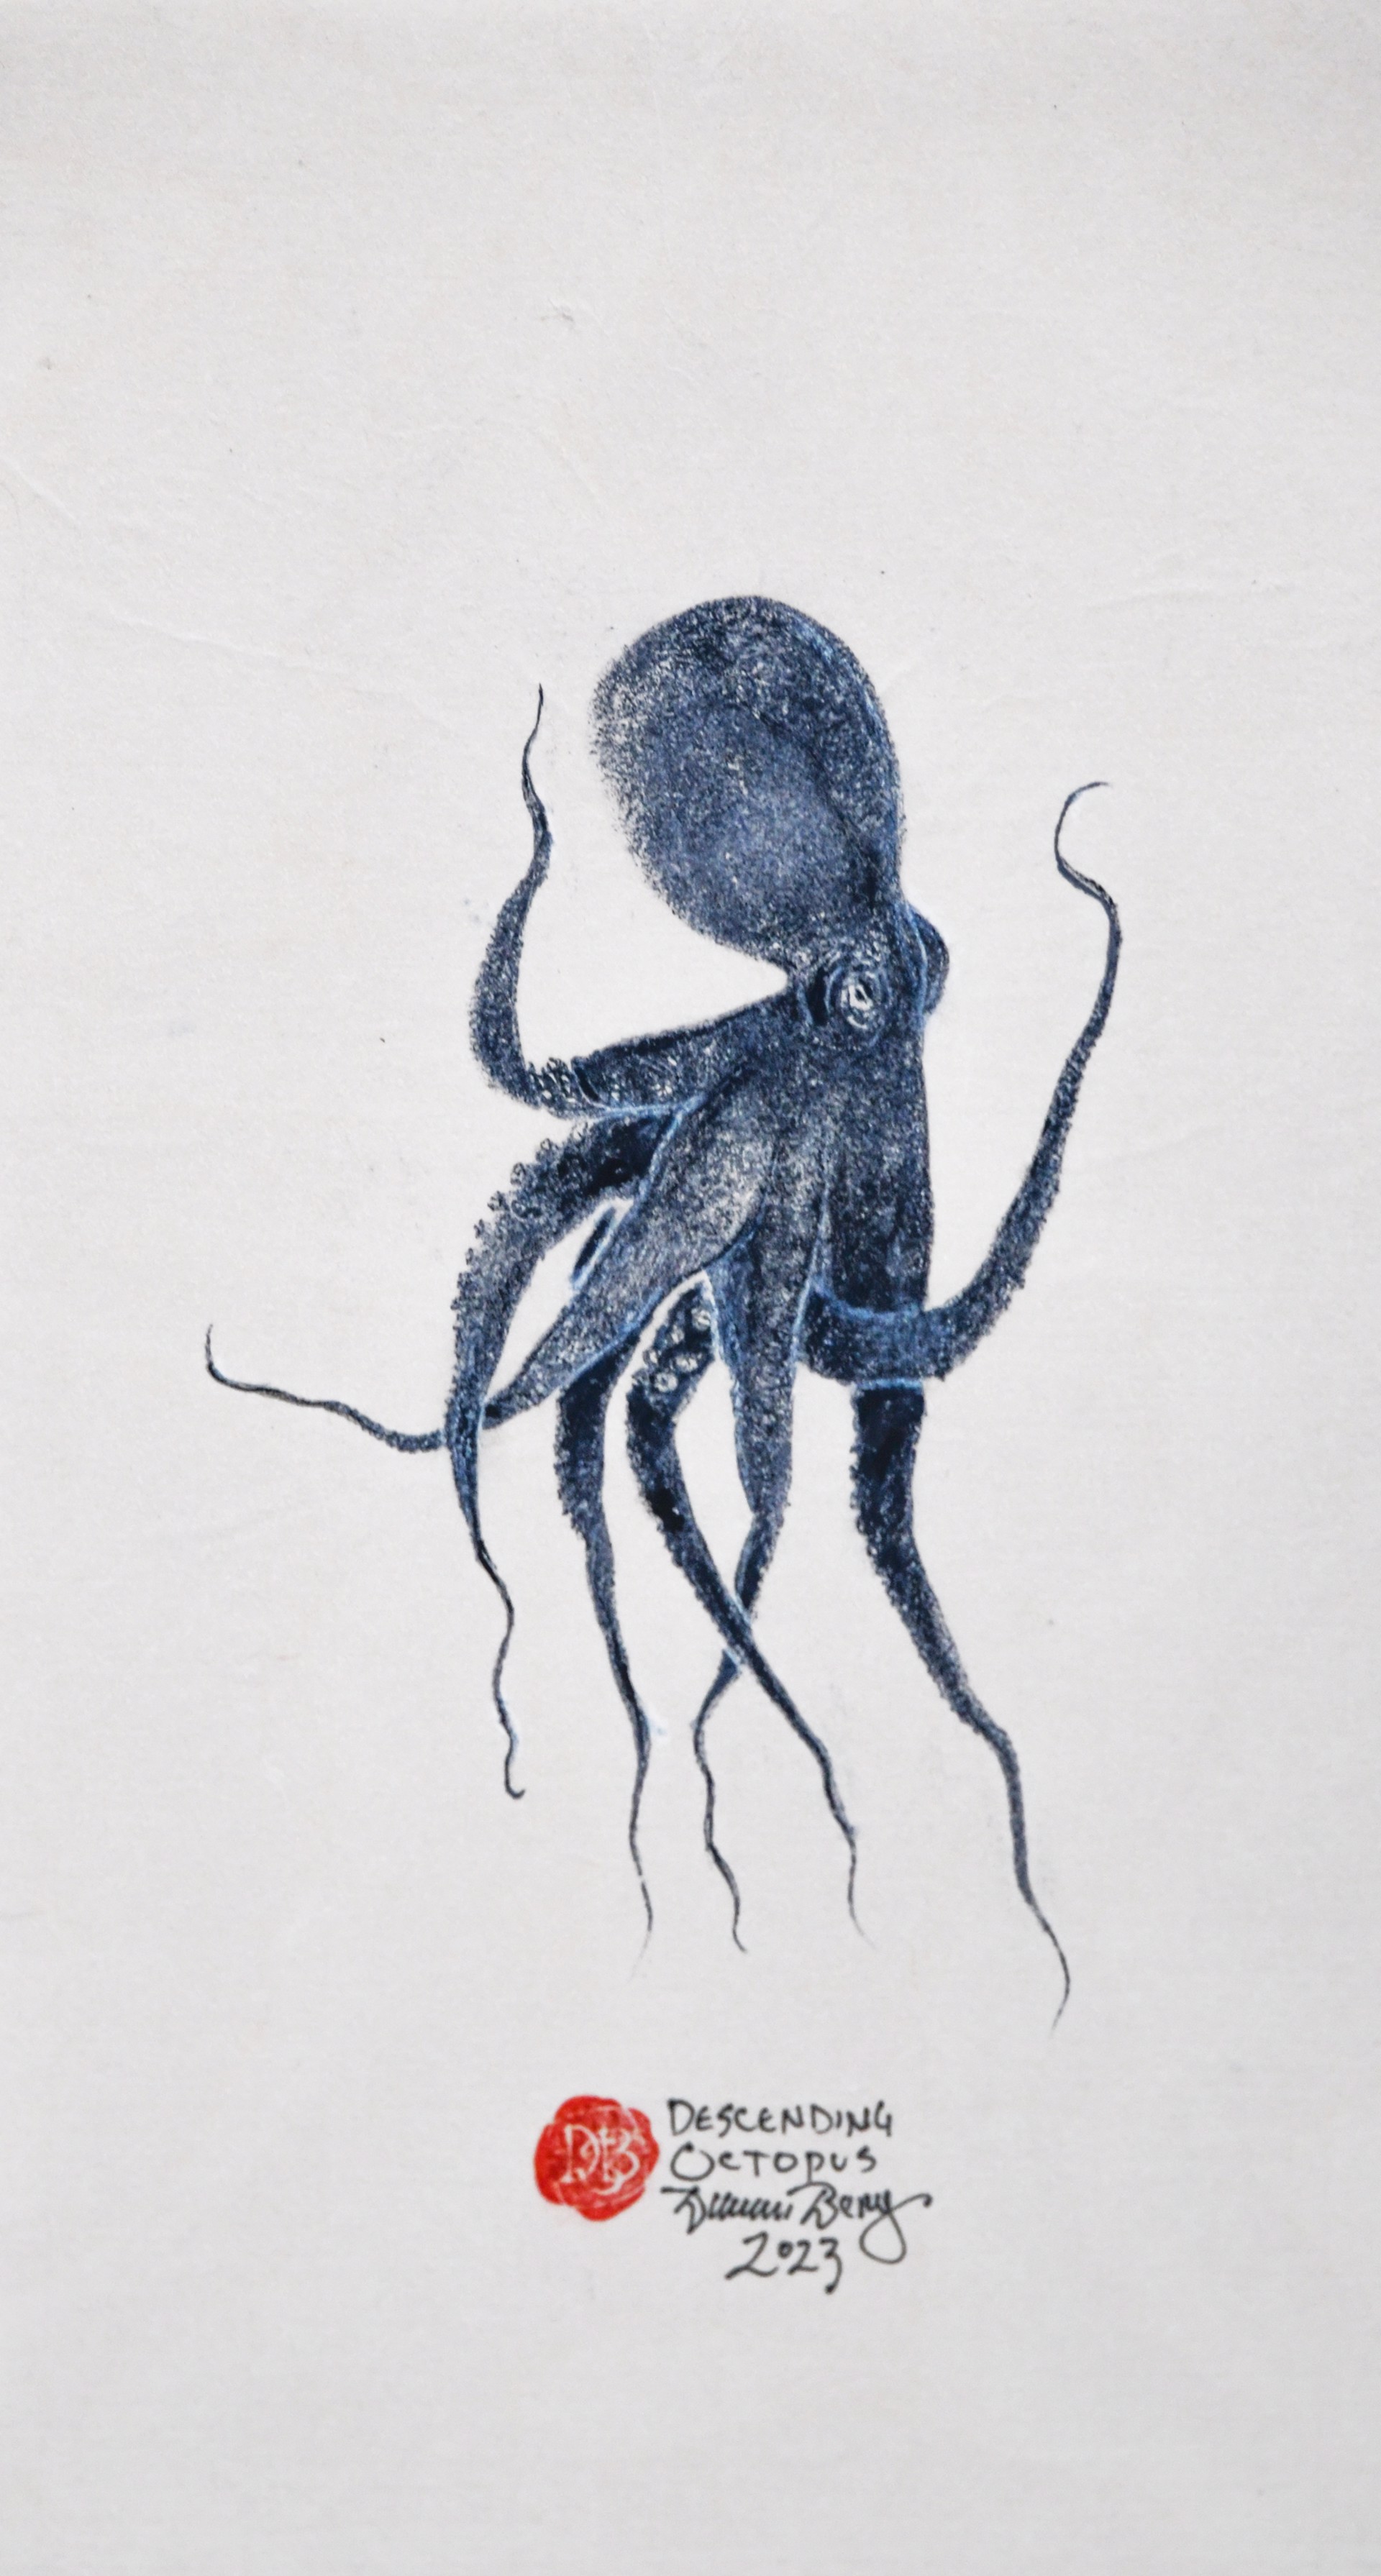 Descending Octopus by Duncan Berry